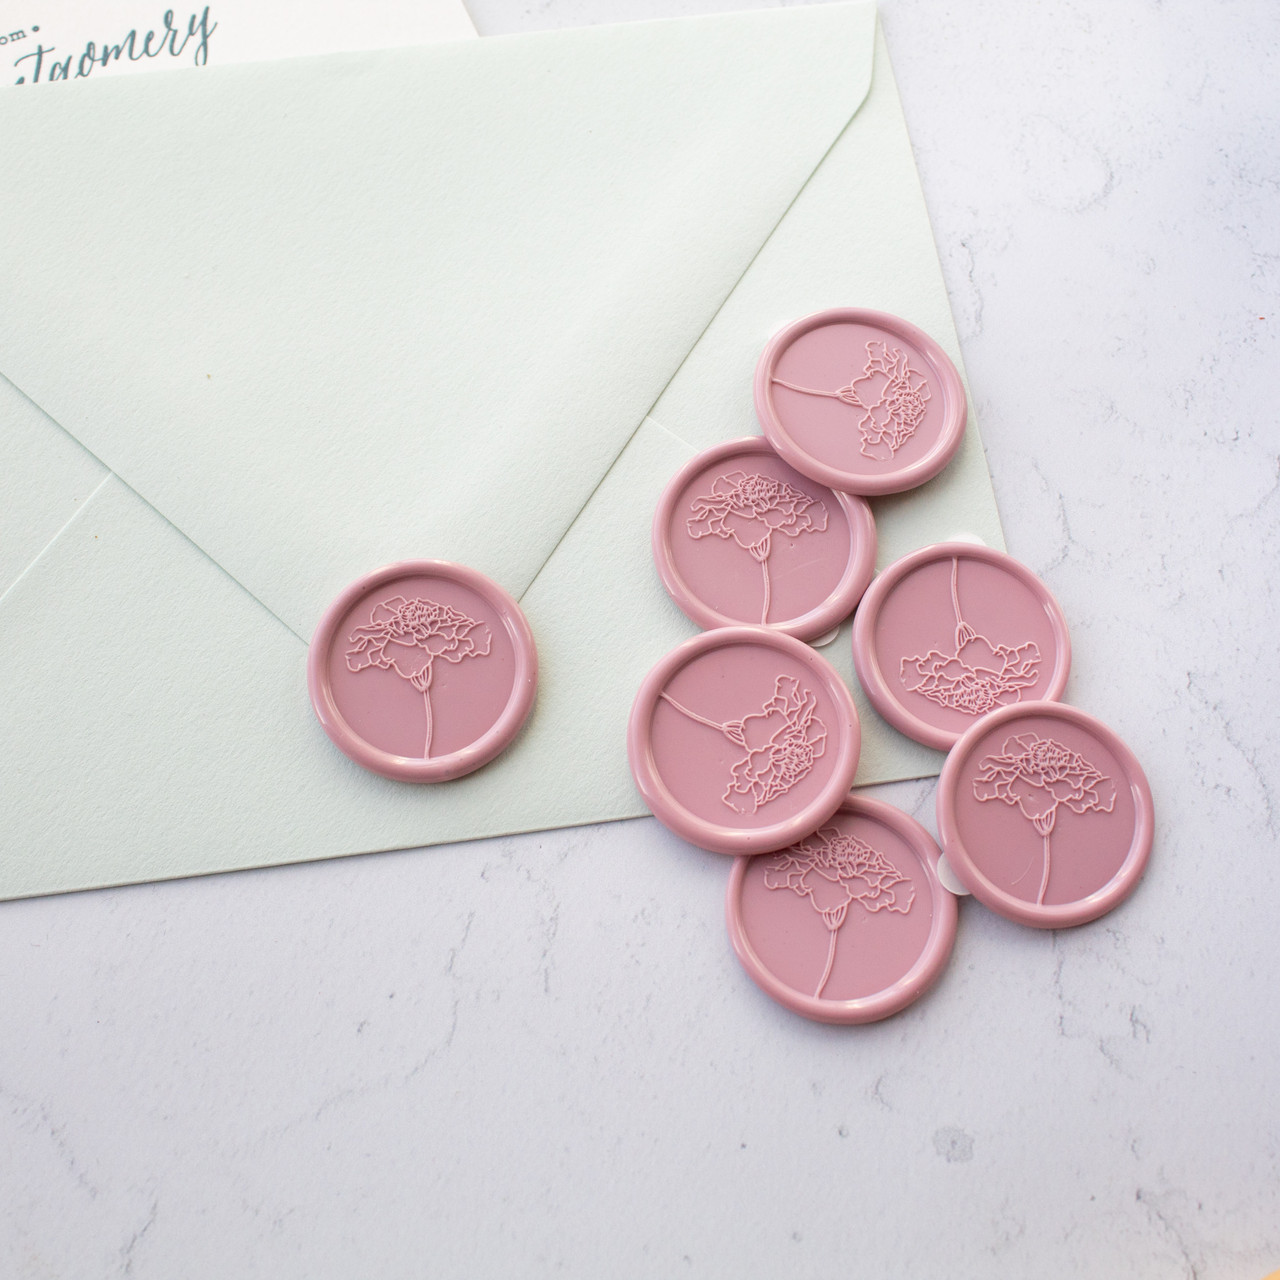 Printable Envelope Seal, Monogram Seal Stickers, Round Envelope